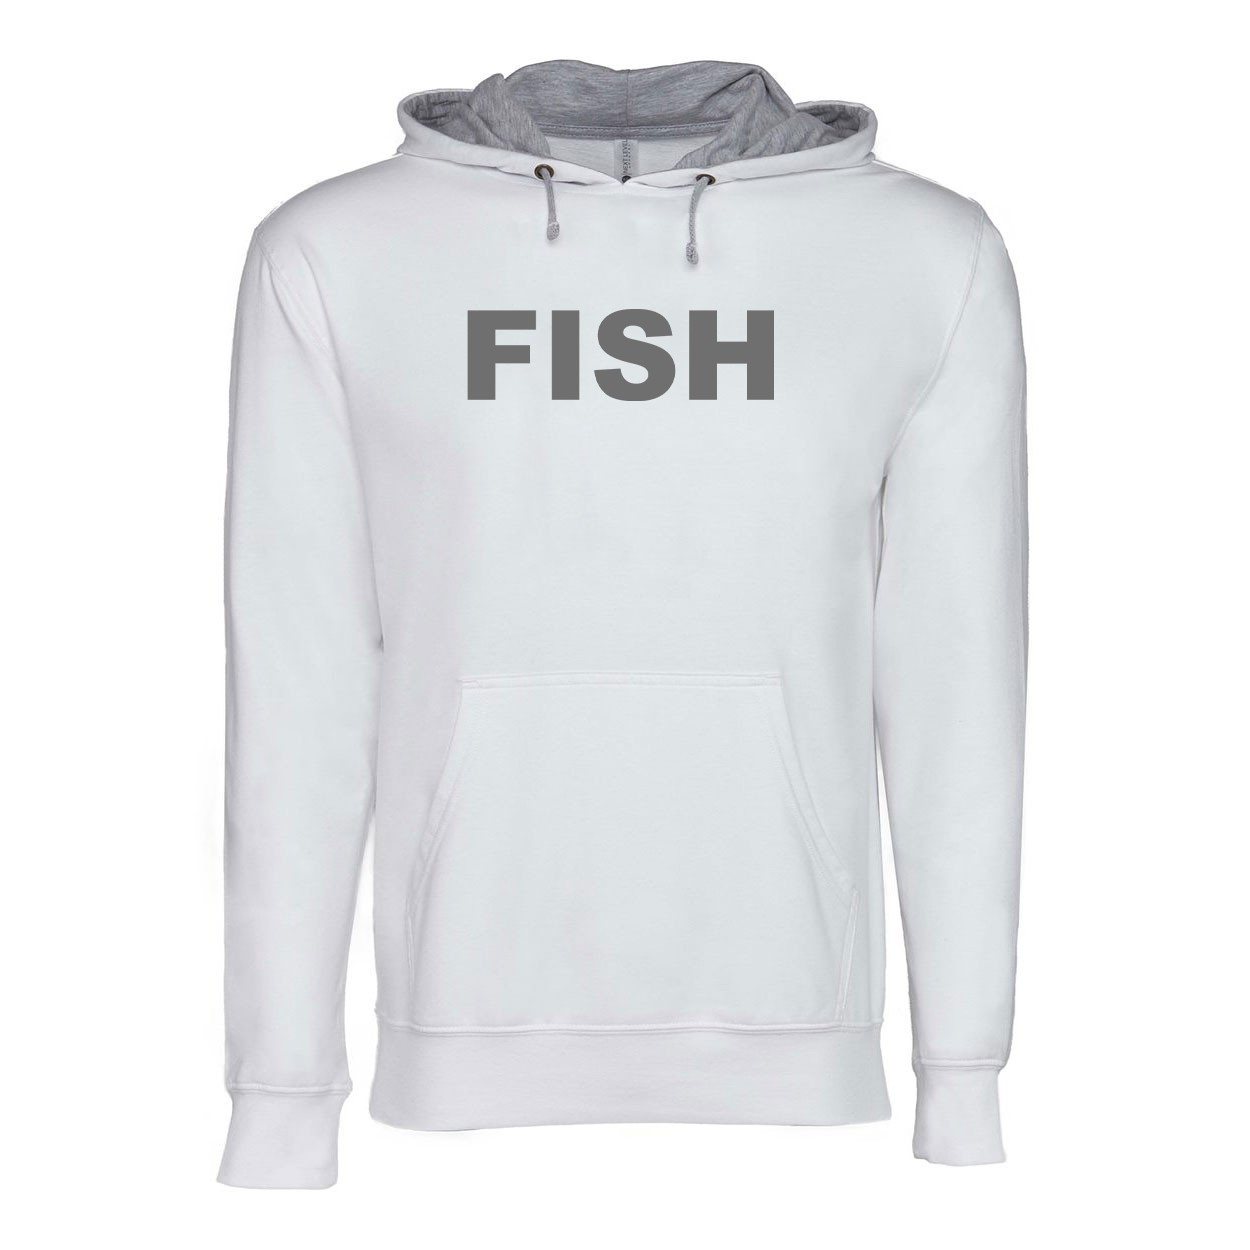 Fish Brand Logo Classic Lightweight Sweatshirt White/Heather Gray (Gray Logo)